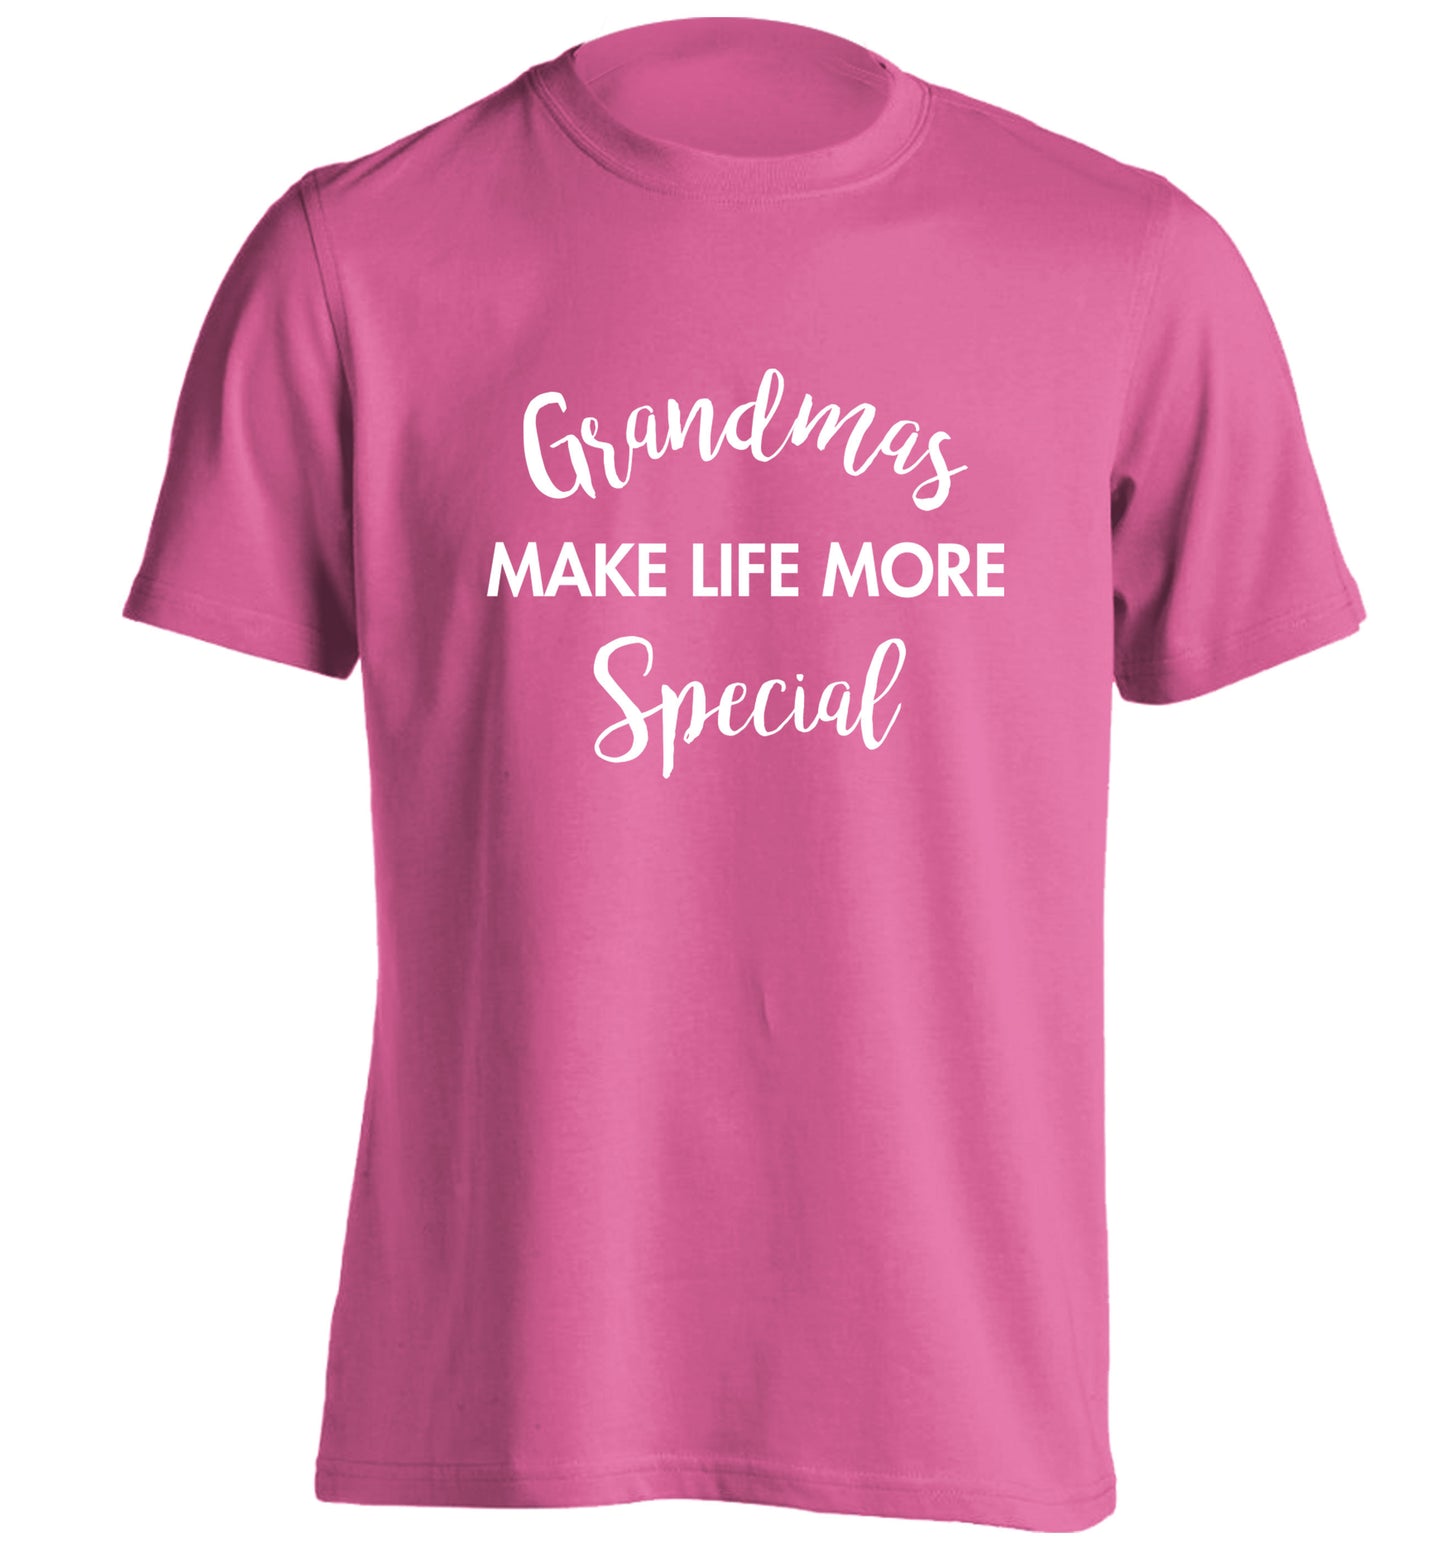 Grandmas make life more special adults unisex pink Tshirt 2XL